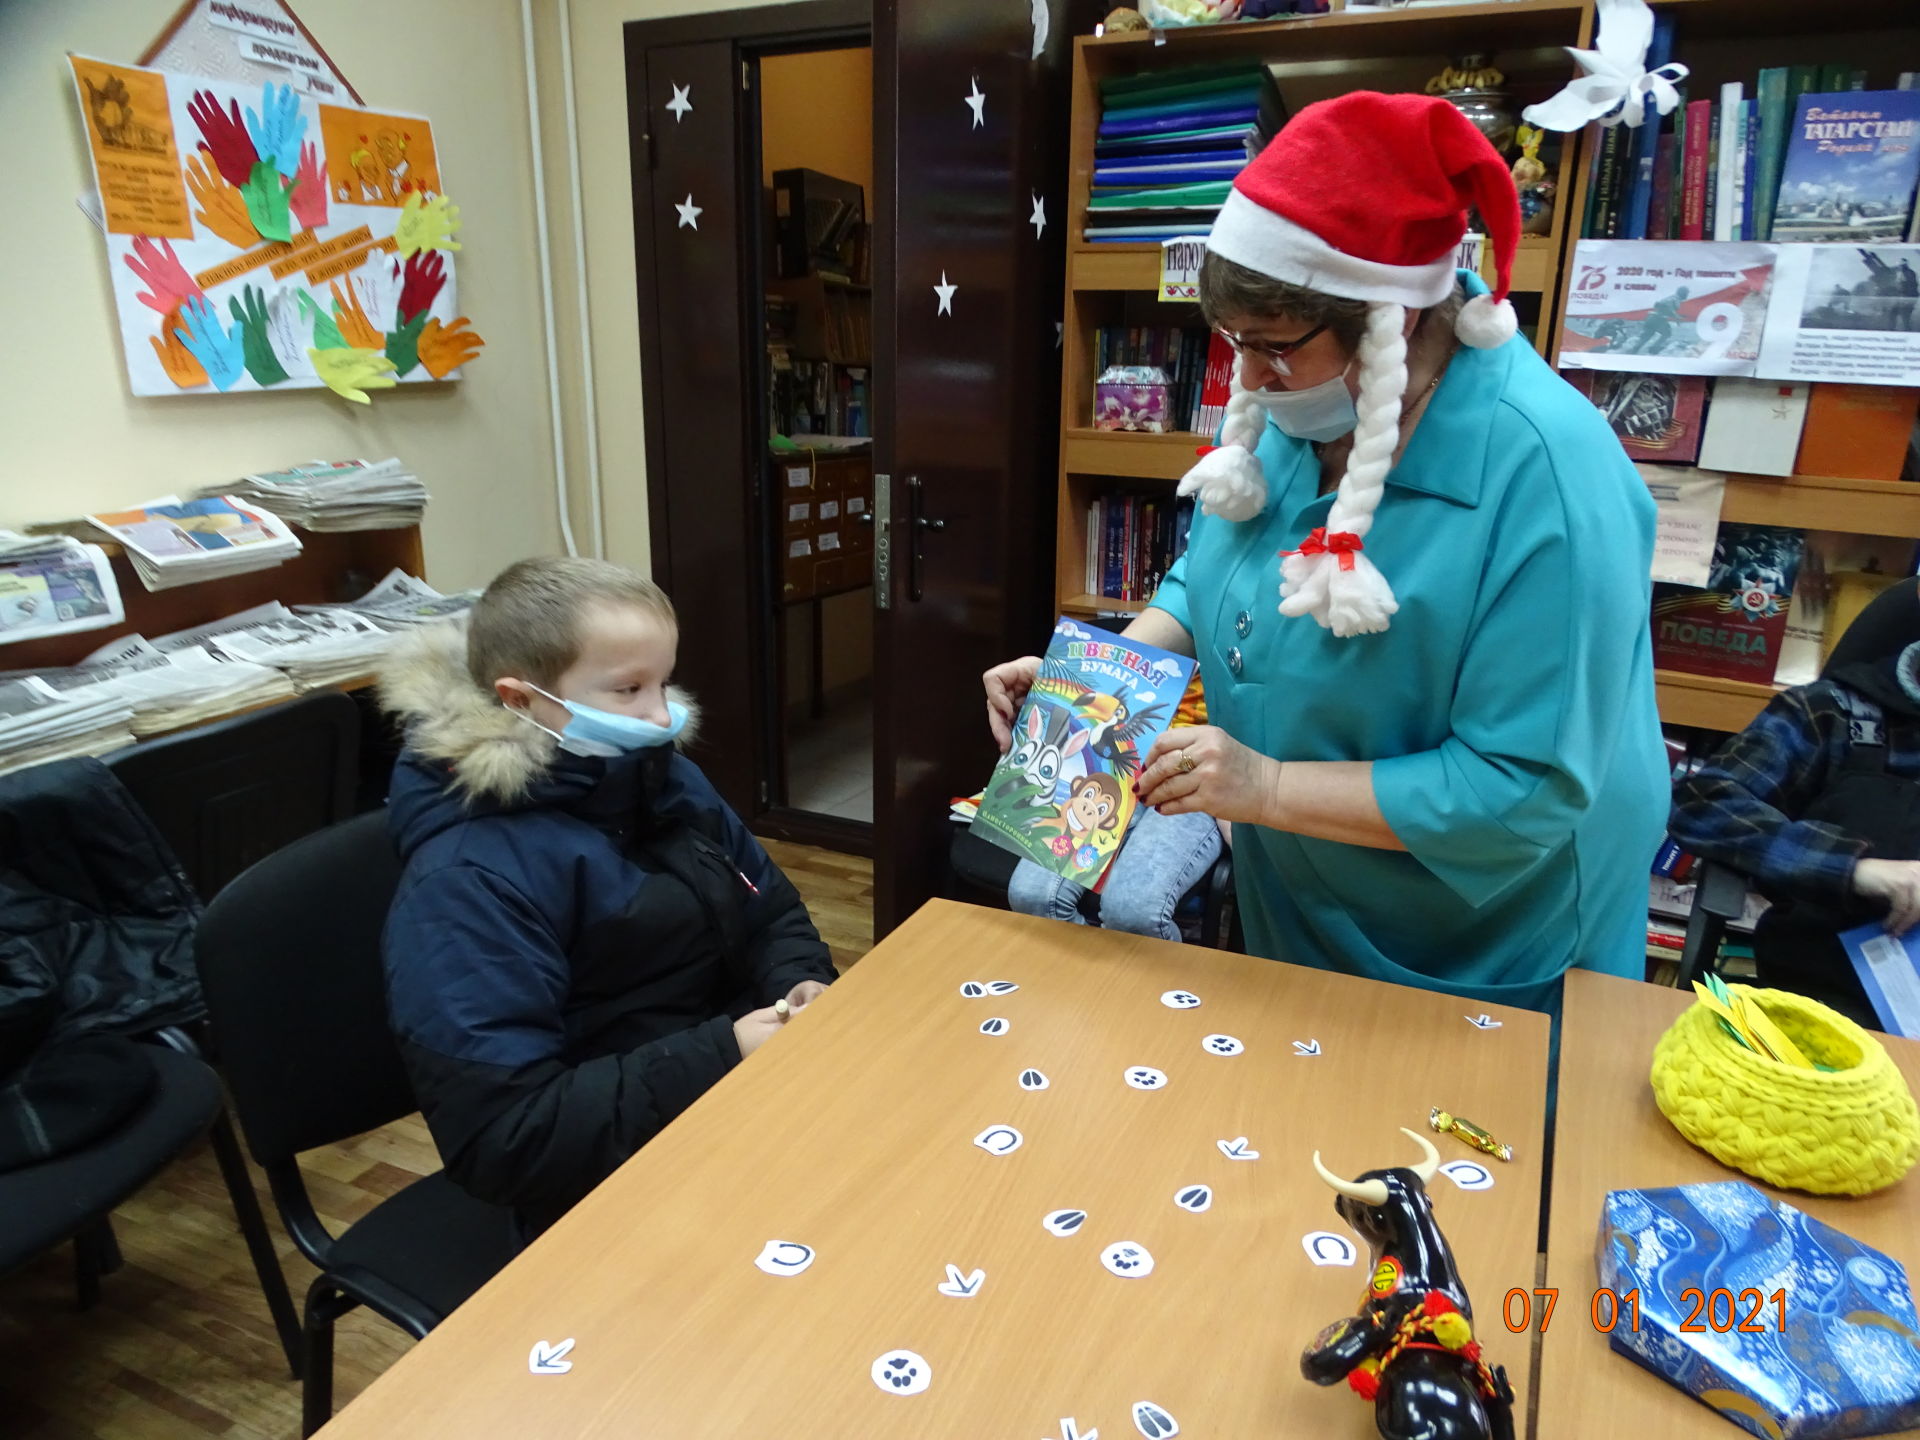 Квест - игра "Весёлое Рождество» прошла в Иж-Борискино Спасского района